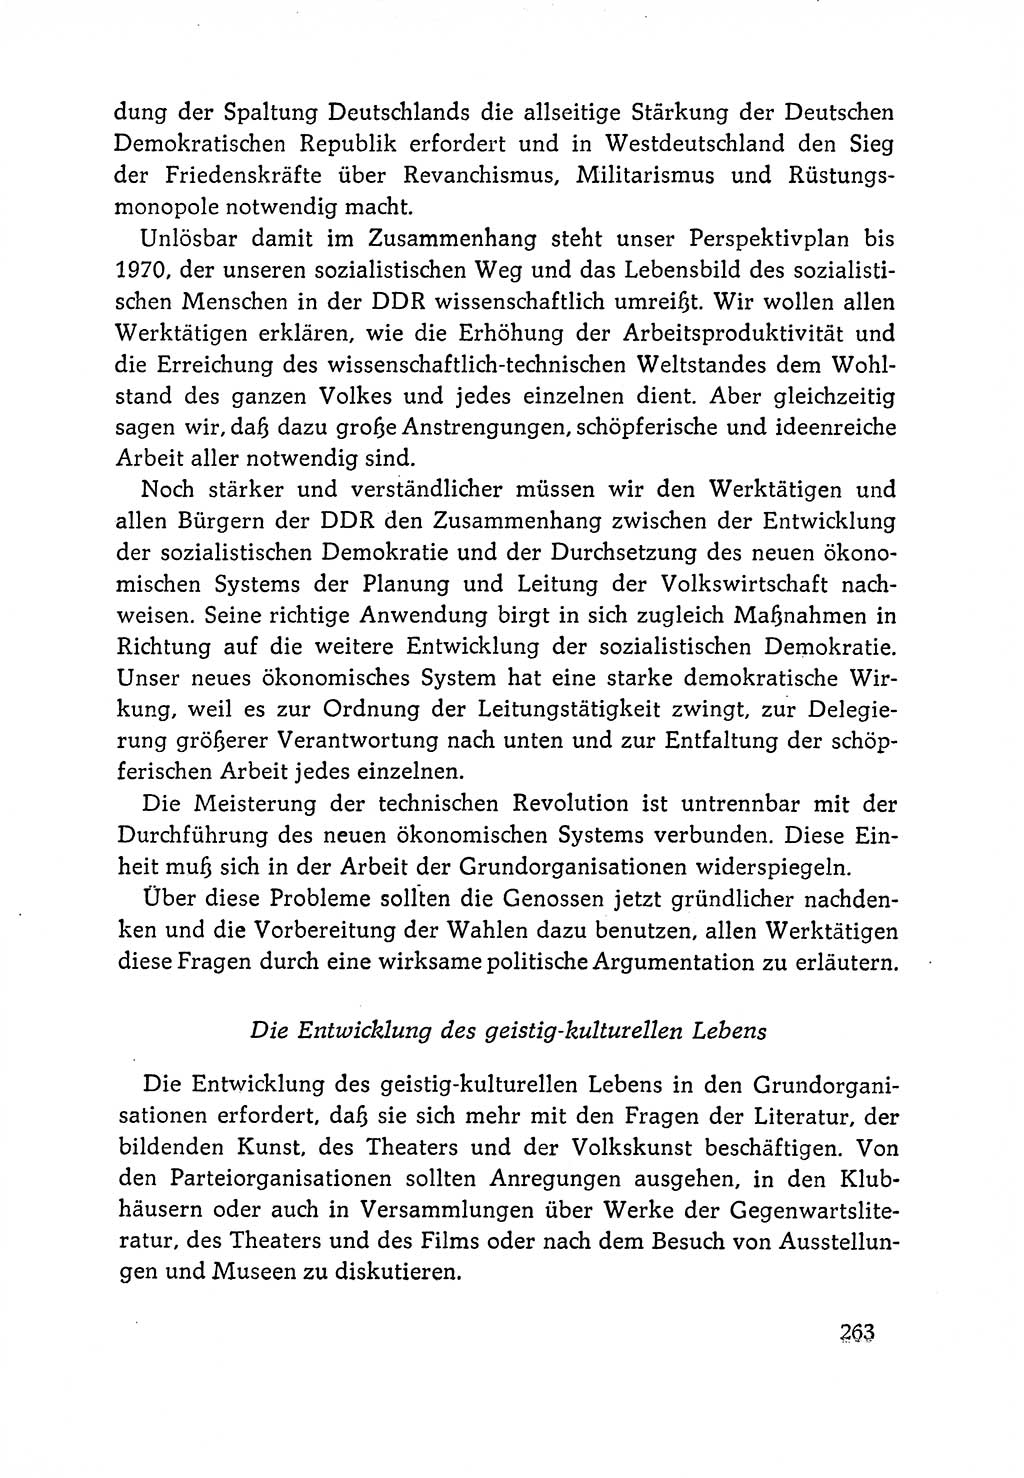 Dokumente der Sozialistischen Einheitspartei Deutschlands (SED) [Deutsche Demokratische Republik (DDR)] 1964-1965, Seite 263 (Dok. SED DDR 1964-1965, S. 263)